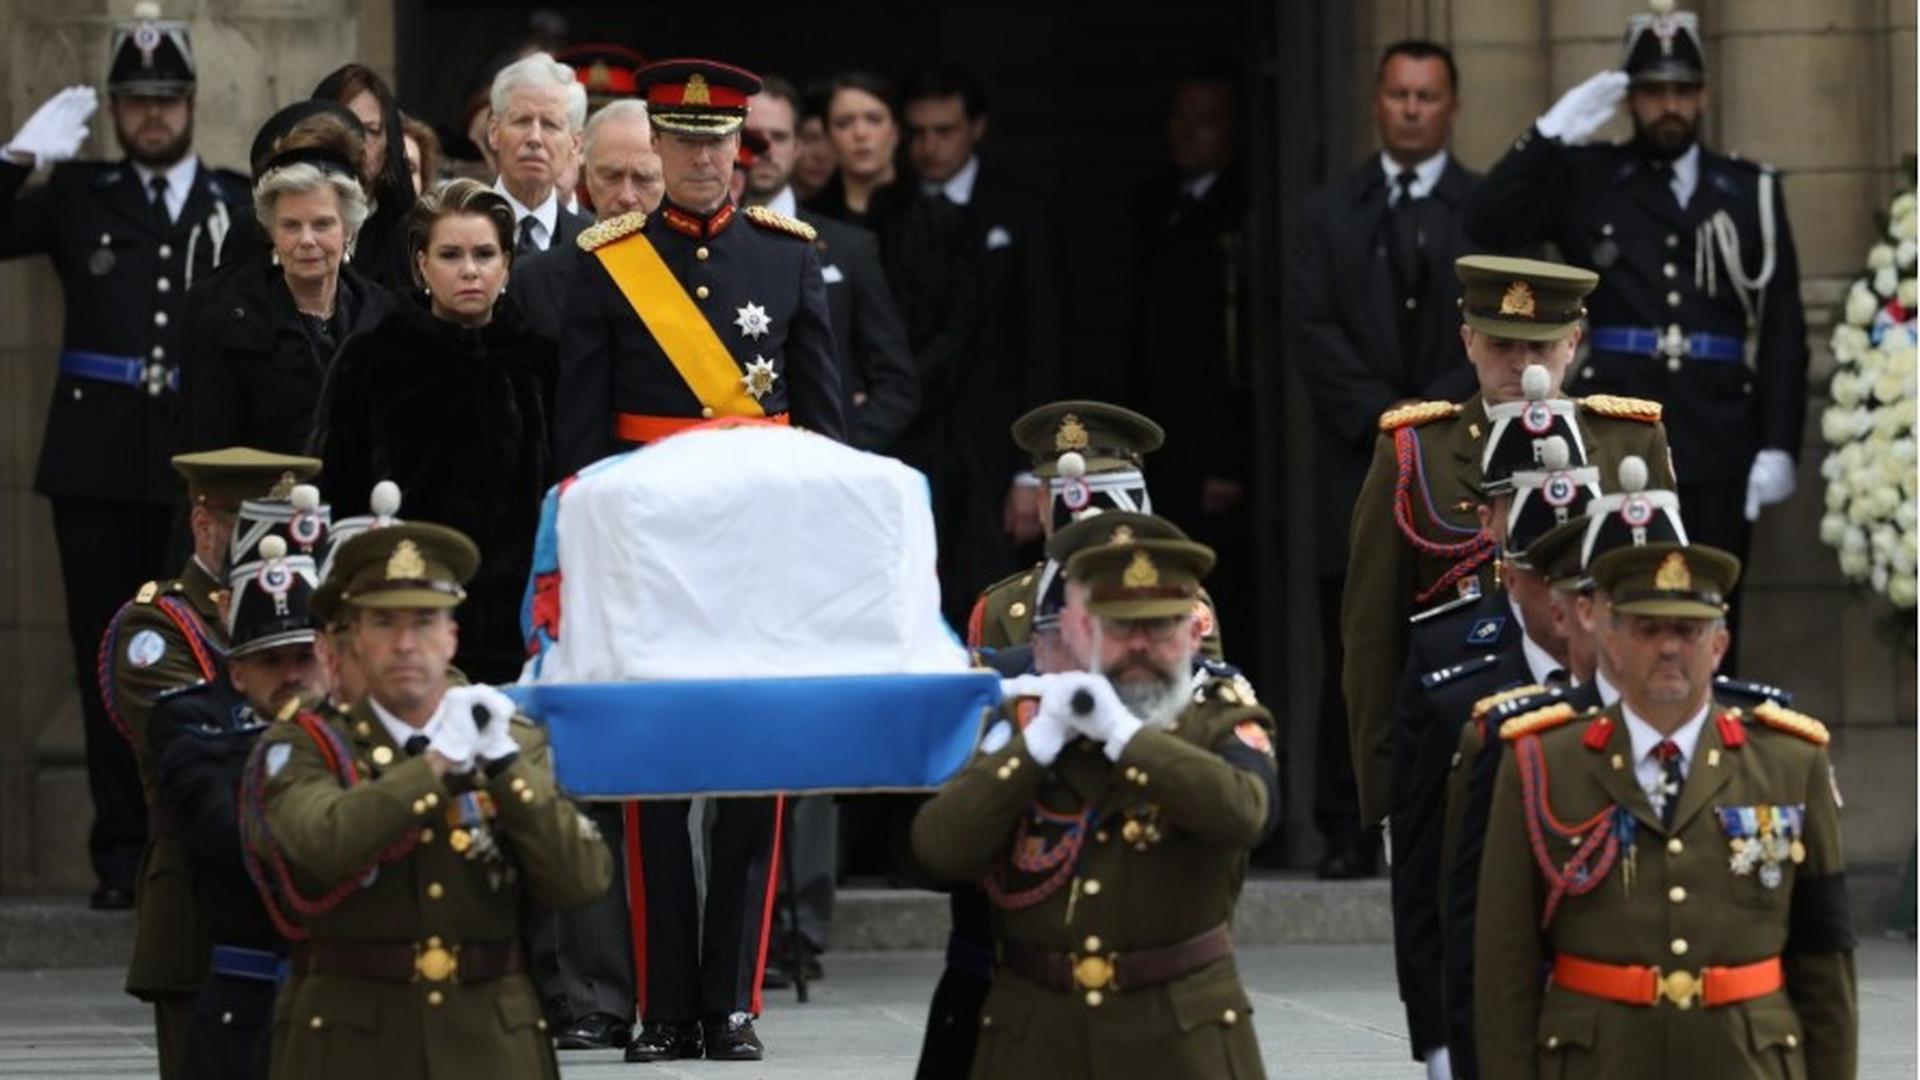 La procession funèbre avec le cercueil du monarque arrive devant la cathédrale Notre-Dame.